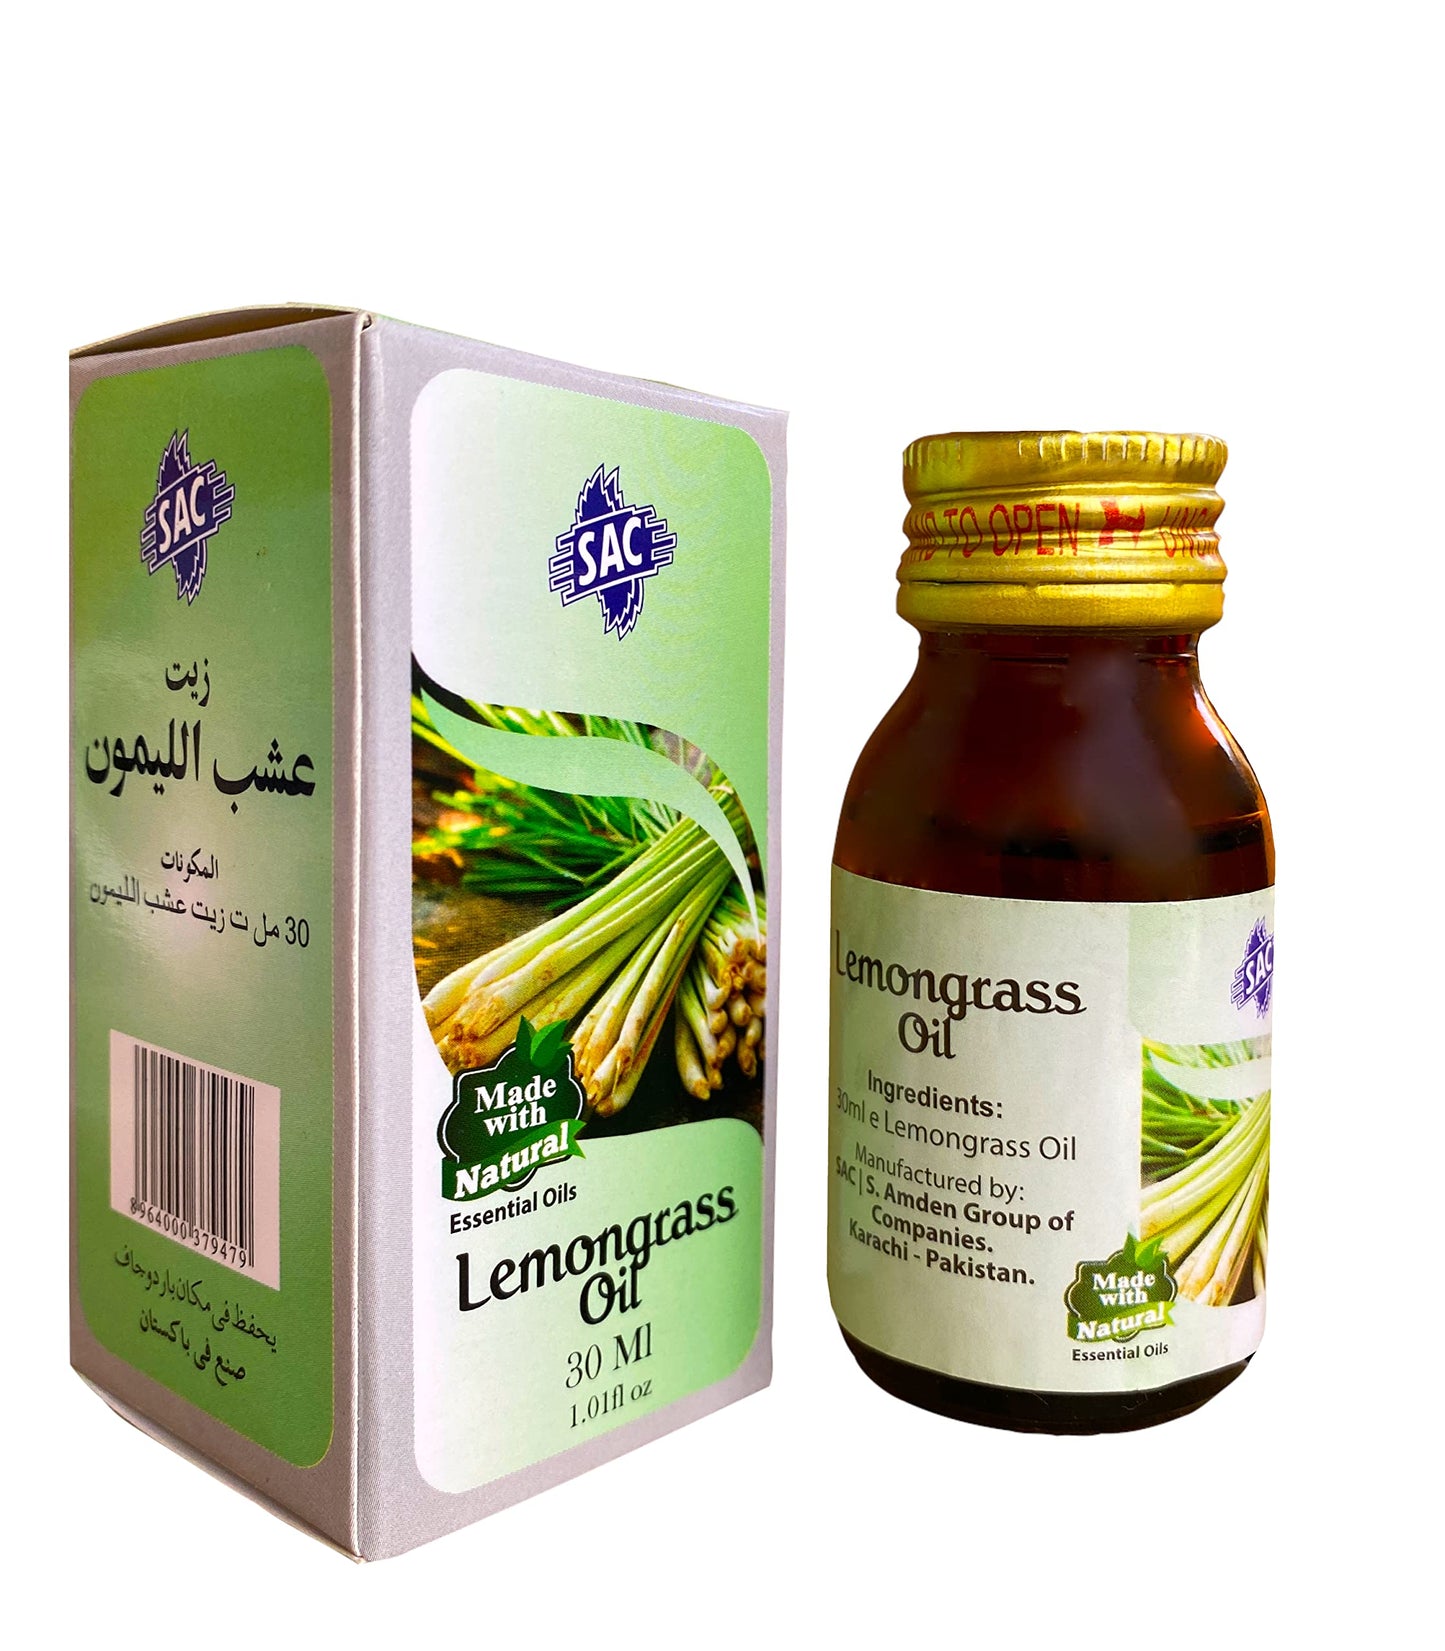 SAC pure Lemongrass Essential Oil 30ml